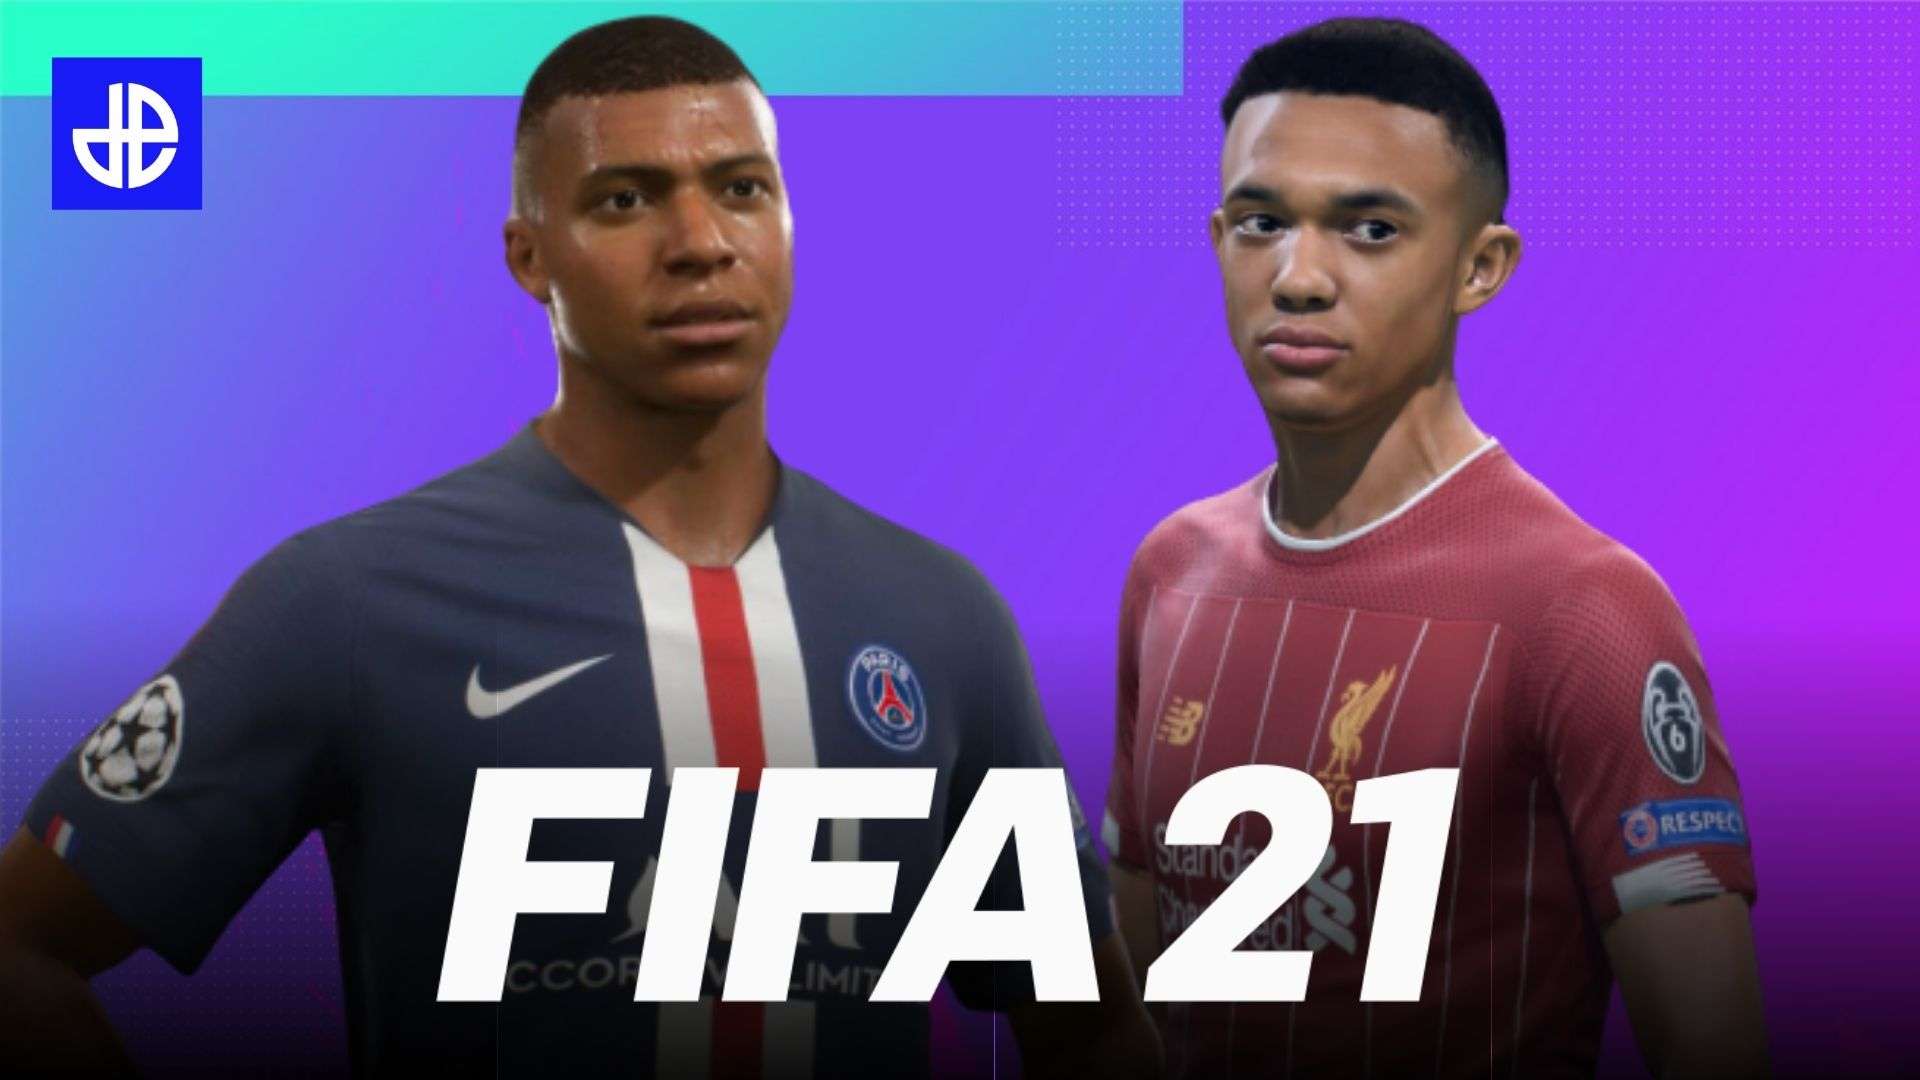 FIFA 21 cover stars